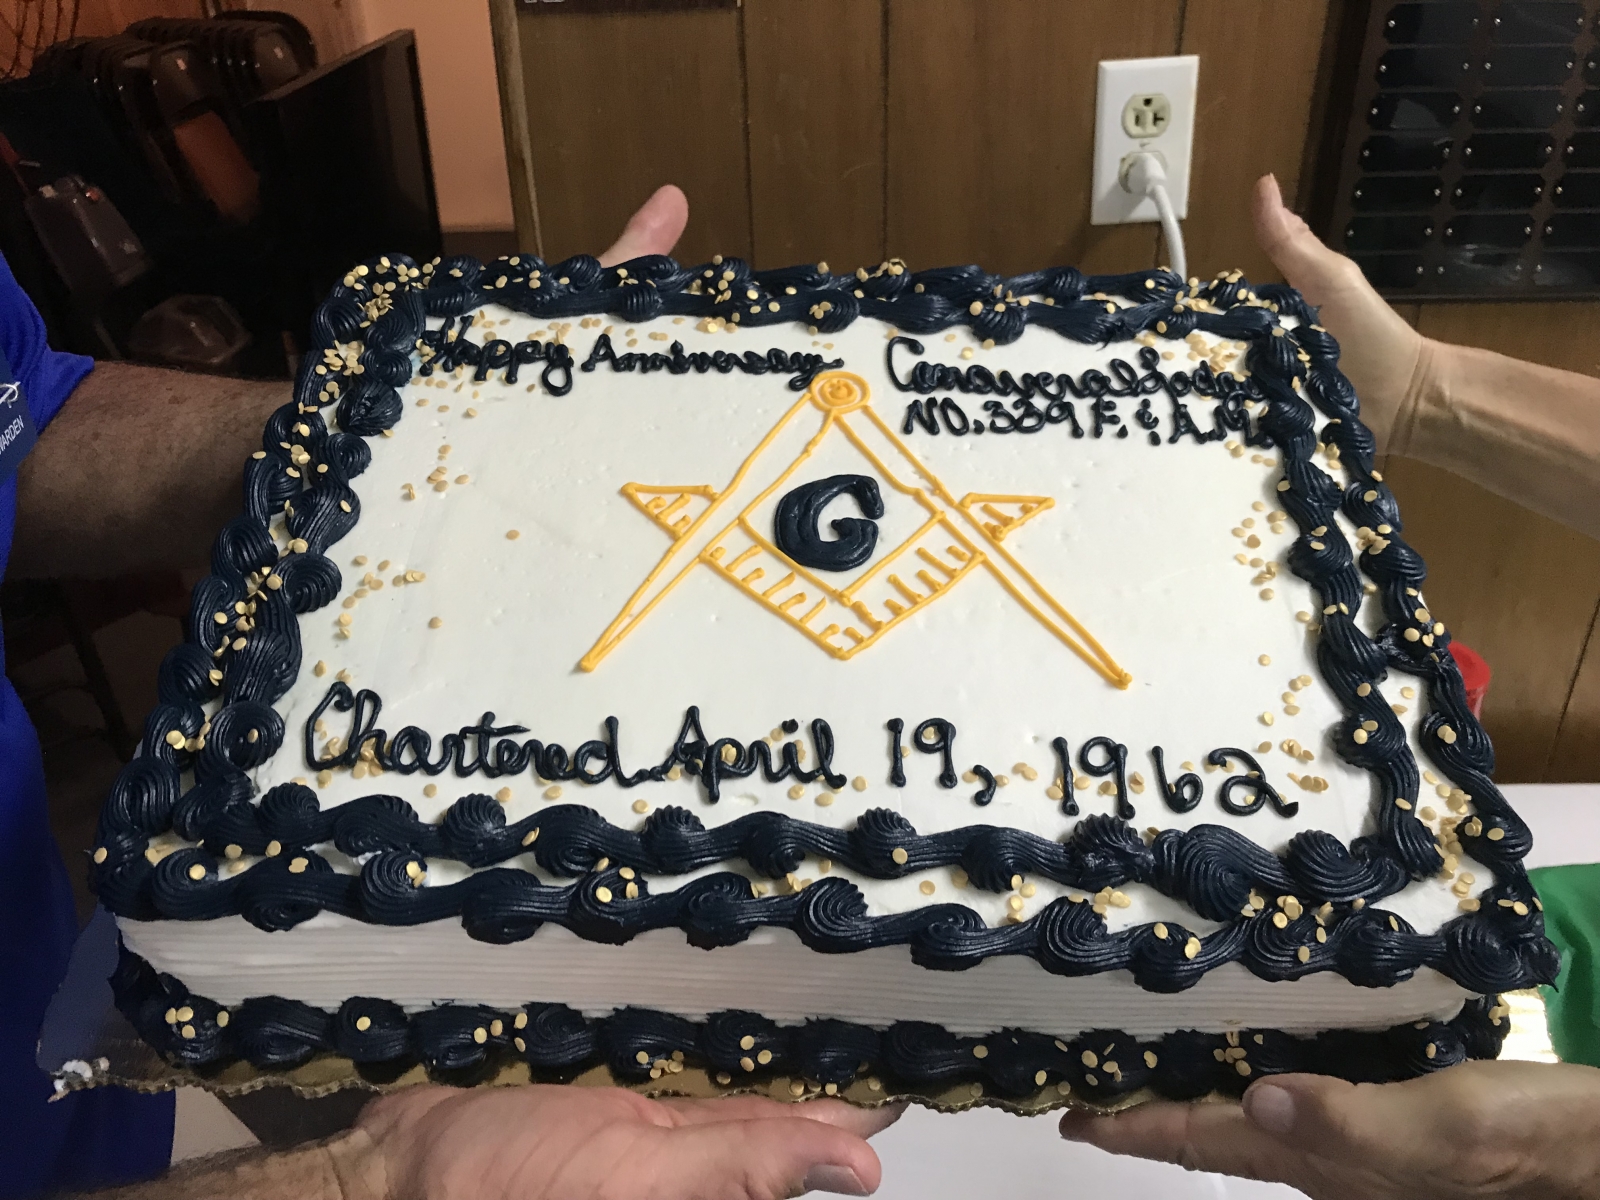 Lodge-anniversary-cake